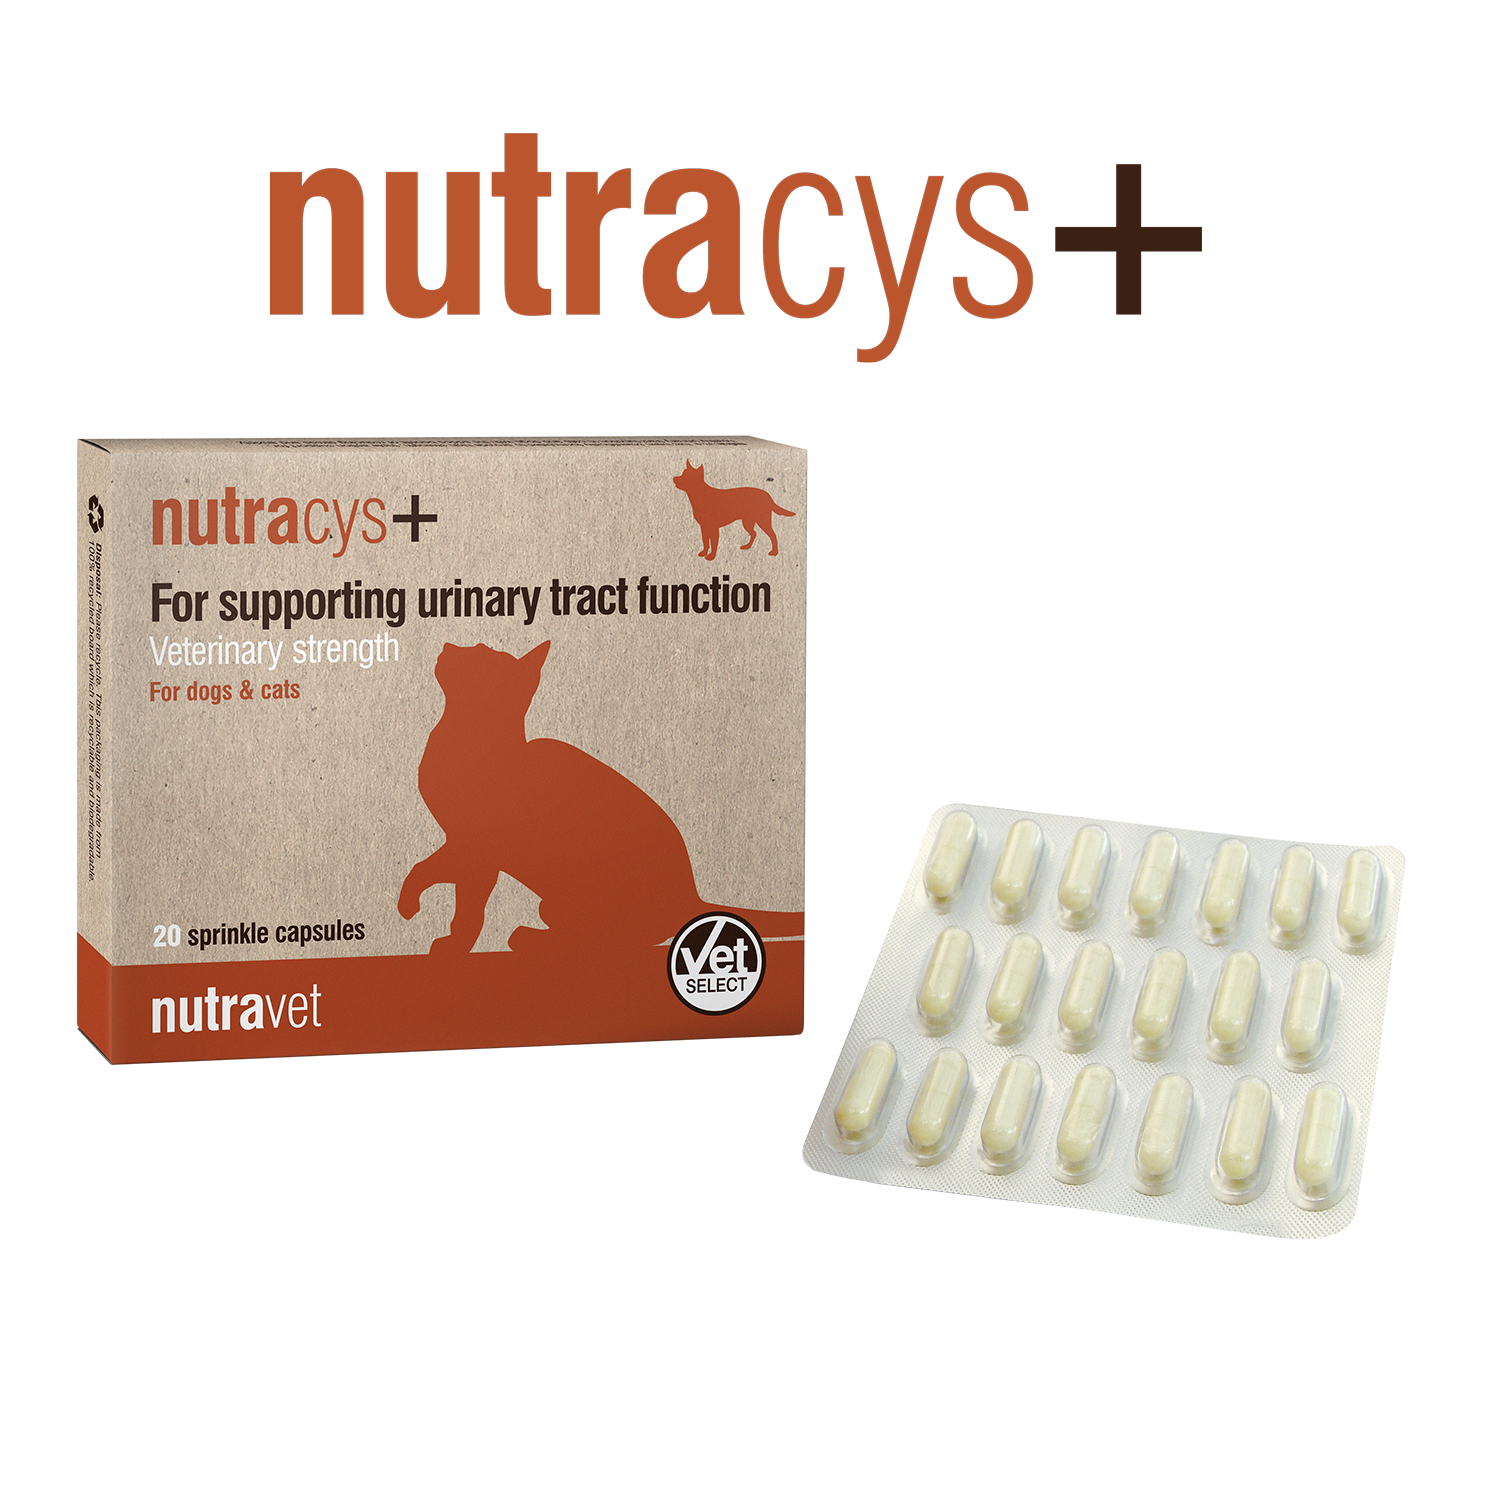 Nutracys+, 220 tabletter